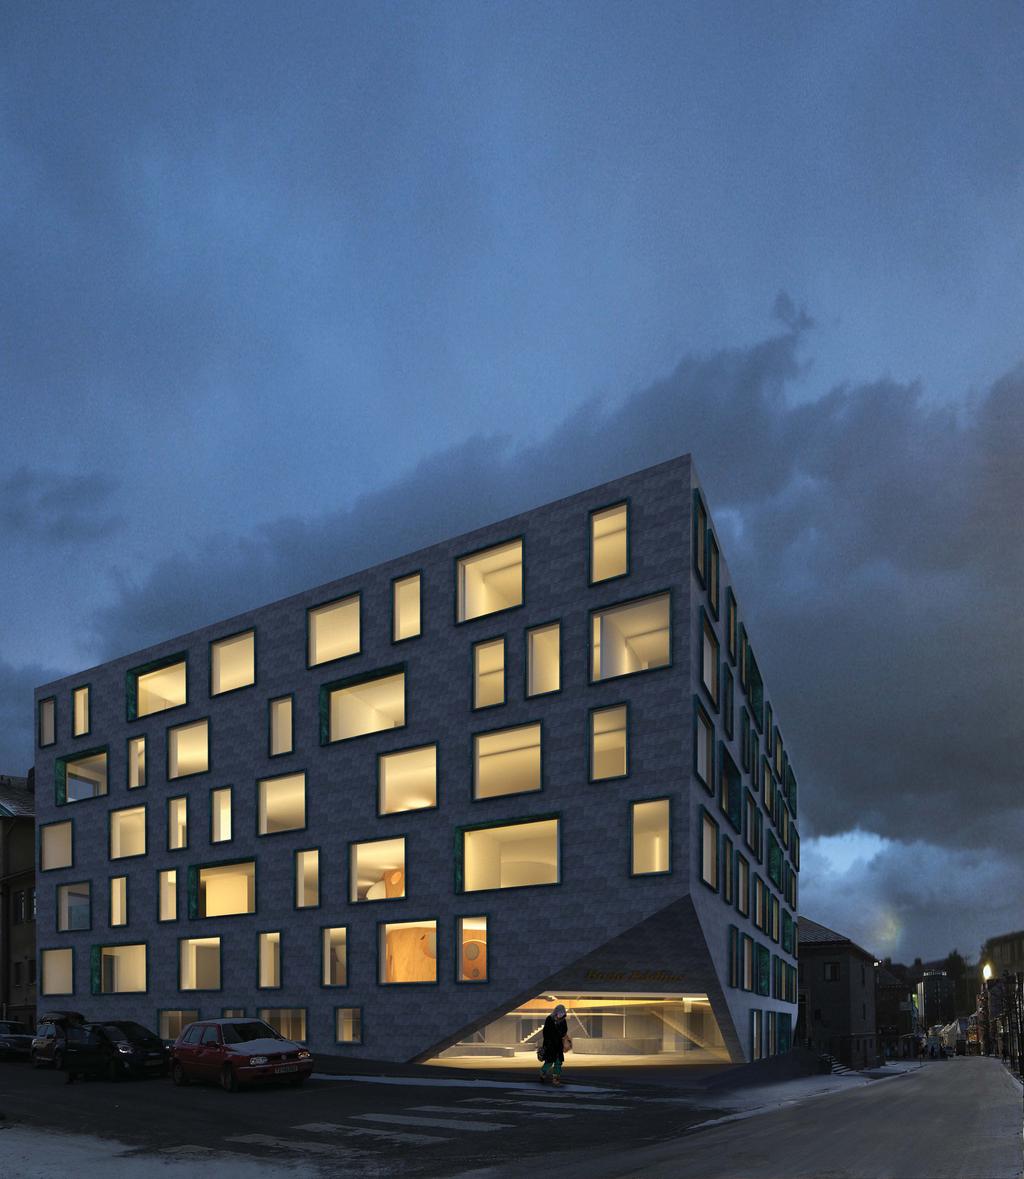 Arkitektkonkurranse // Nye Bodø Rådhus Prosjektet tar utgangspunkt i det eksisterende byggeriets karakteristikk og forbinder de to eksisterende bygningsvolumene med en ny atriumsbygning.